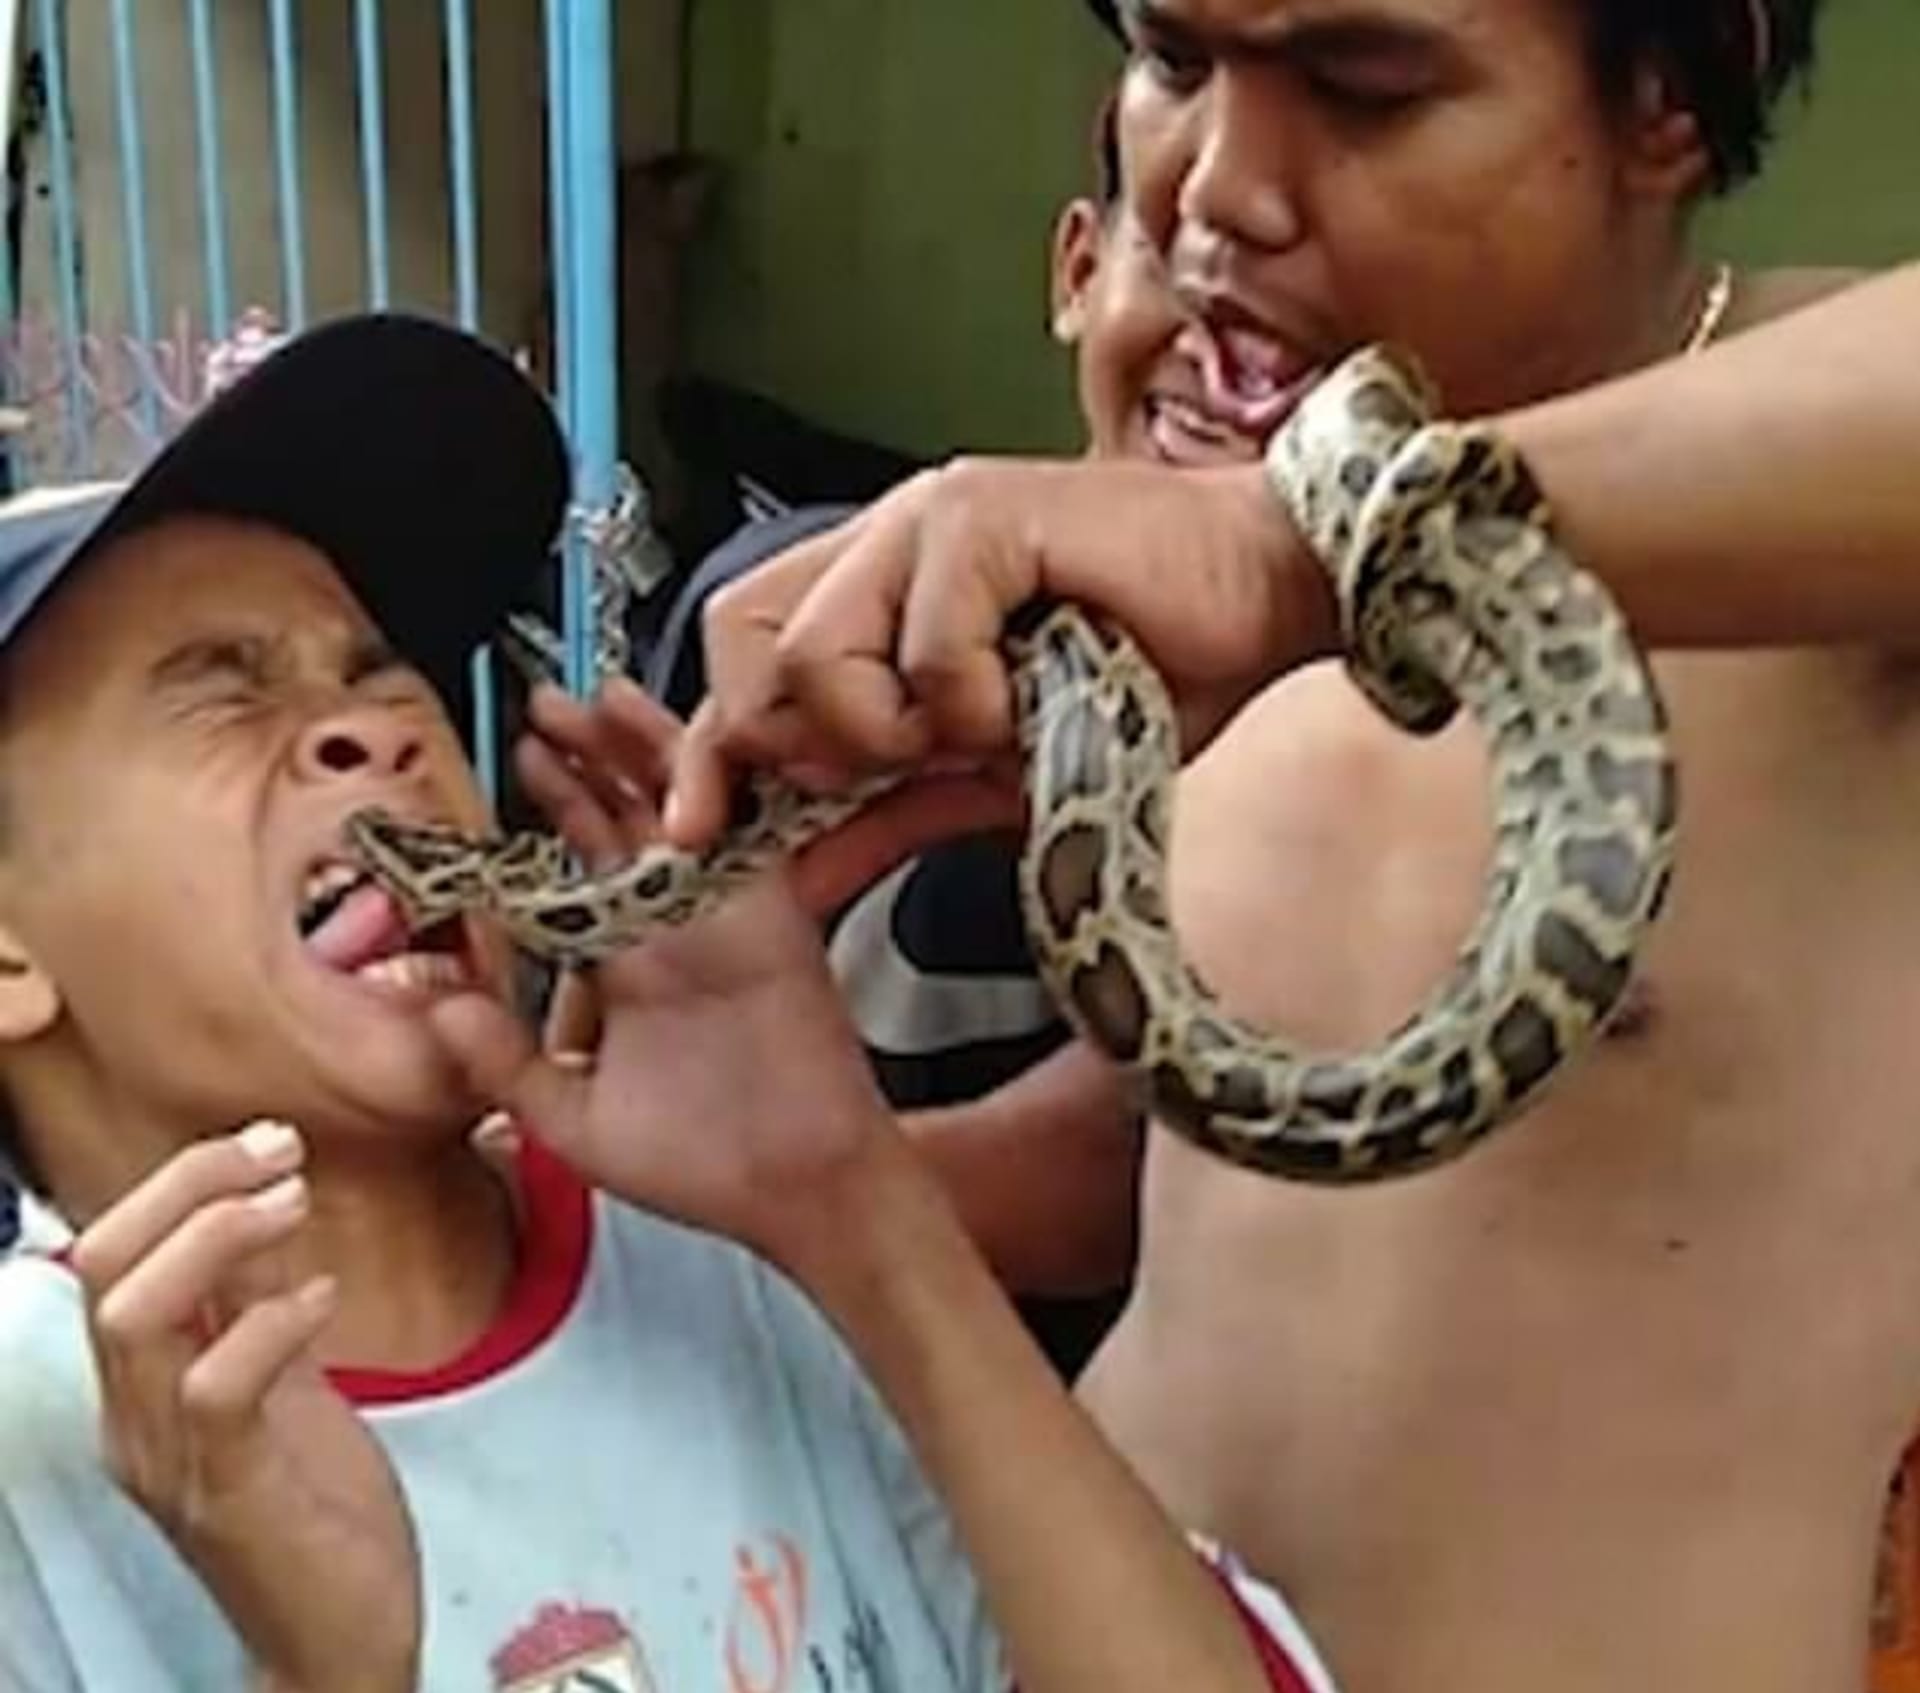 Drzý kluk provokoval hada, který ho kousnul do jazyka